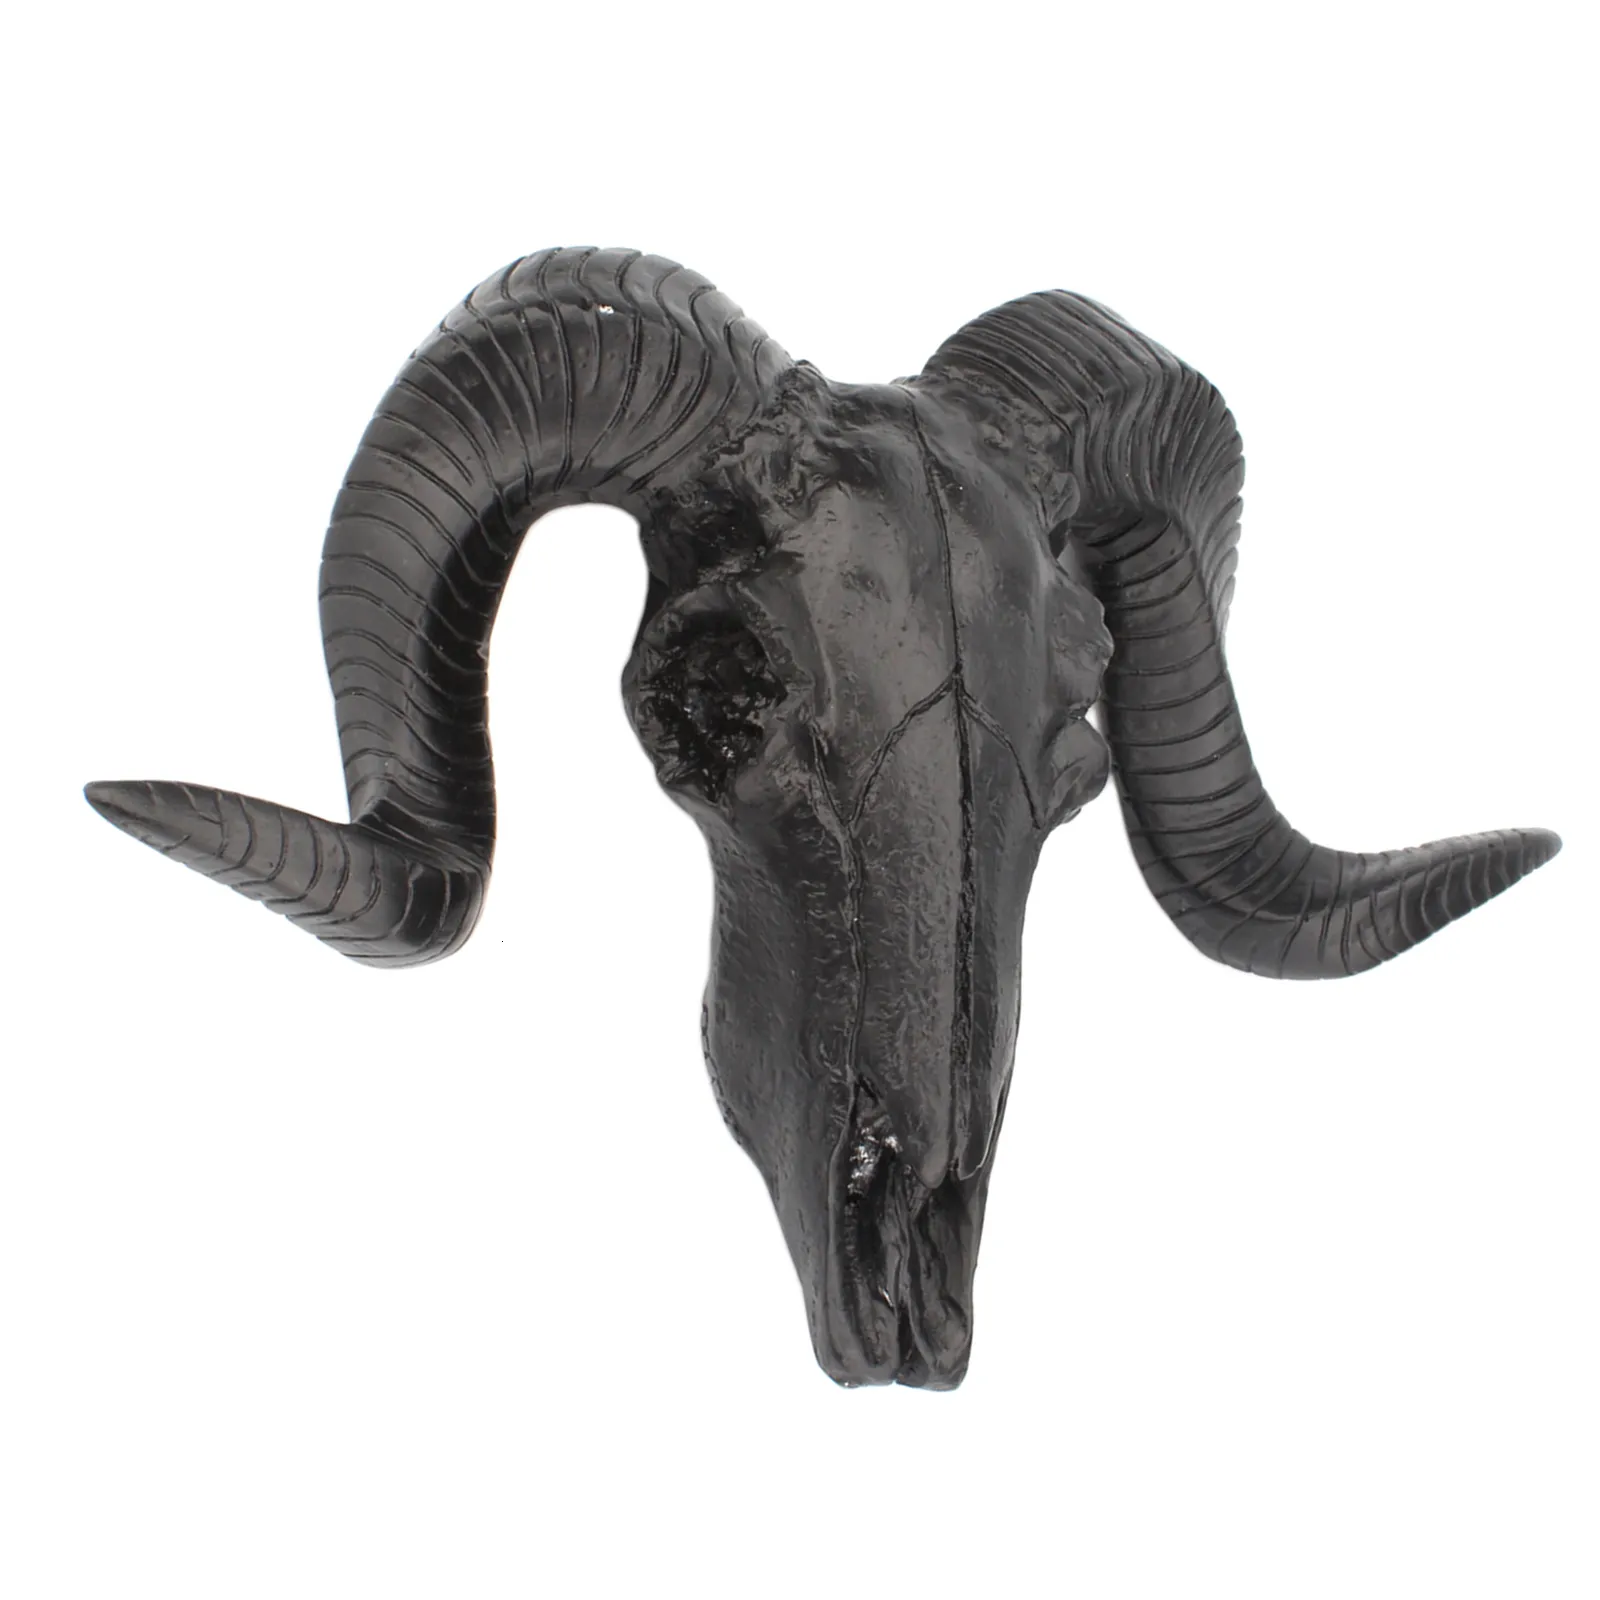 装飾的なオブジェクト図形の羊の頭蓋骨の家の装飾ラムカールした角壁ぶら下がっている壁に垂れ下がったキリンの彫刻野生生物動物の頭の壁の装飾装飾品230621